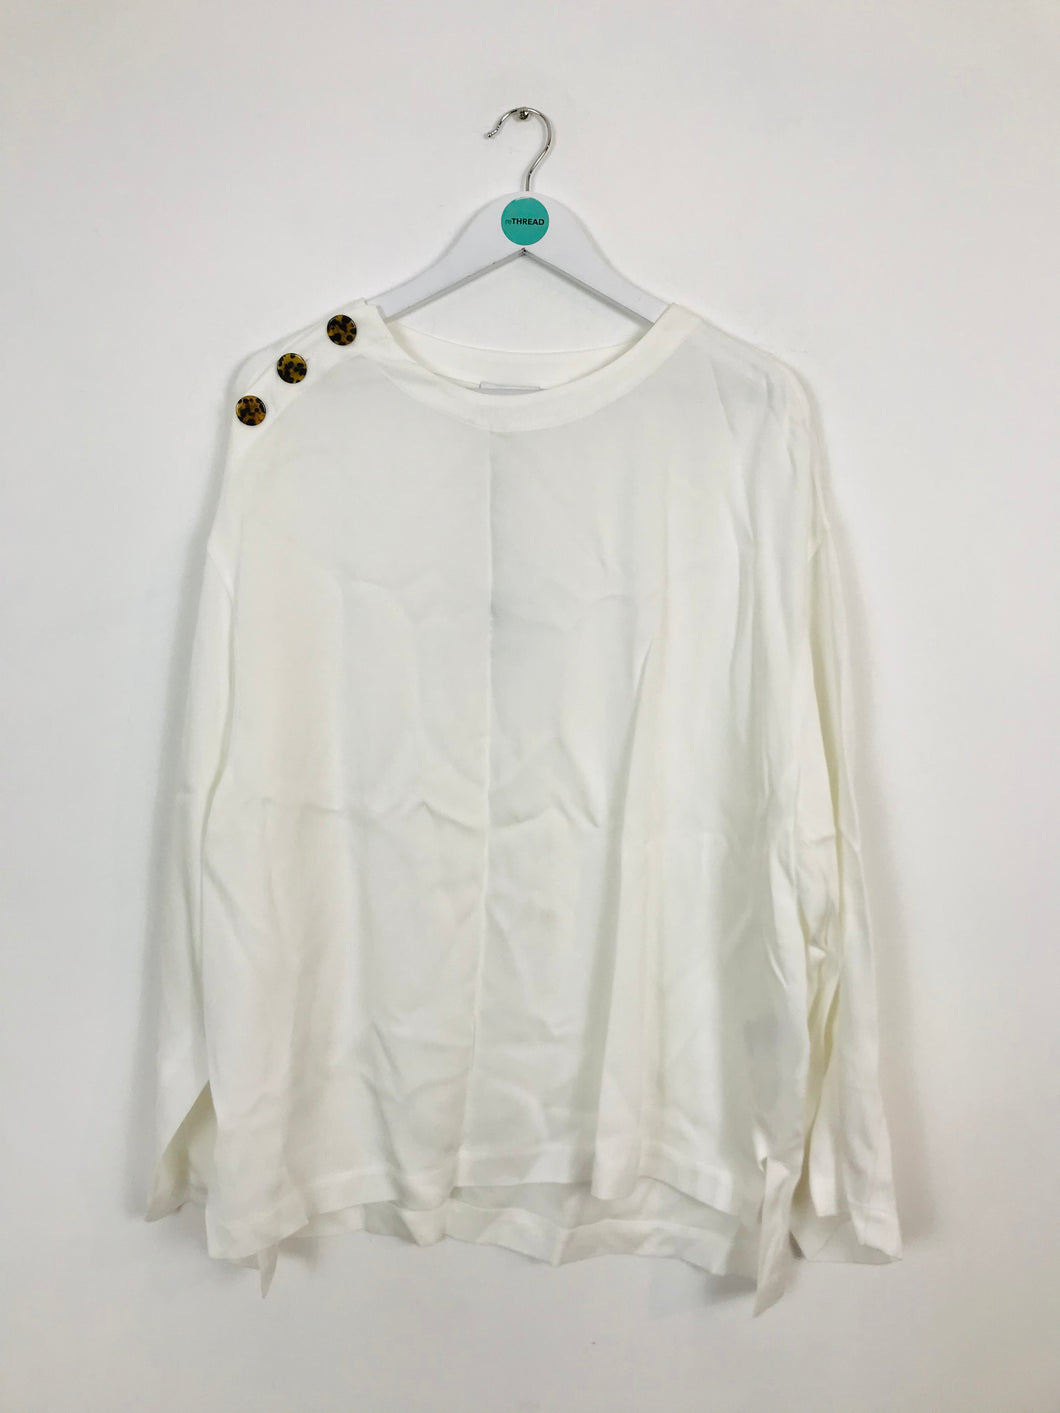 Reiss Women’s Oversized Long Sleeve Blouse | UK 14 | White